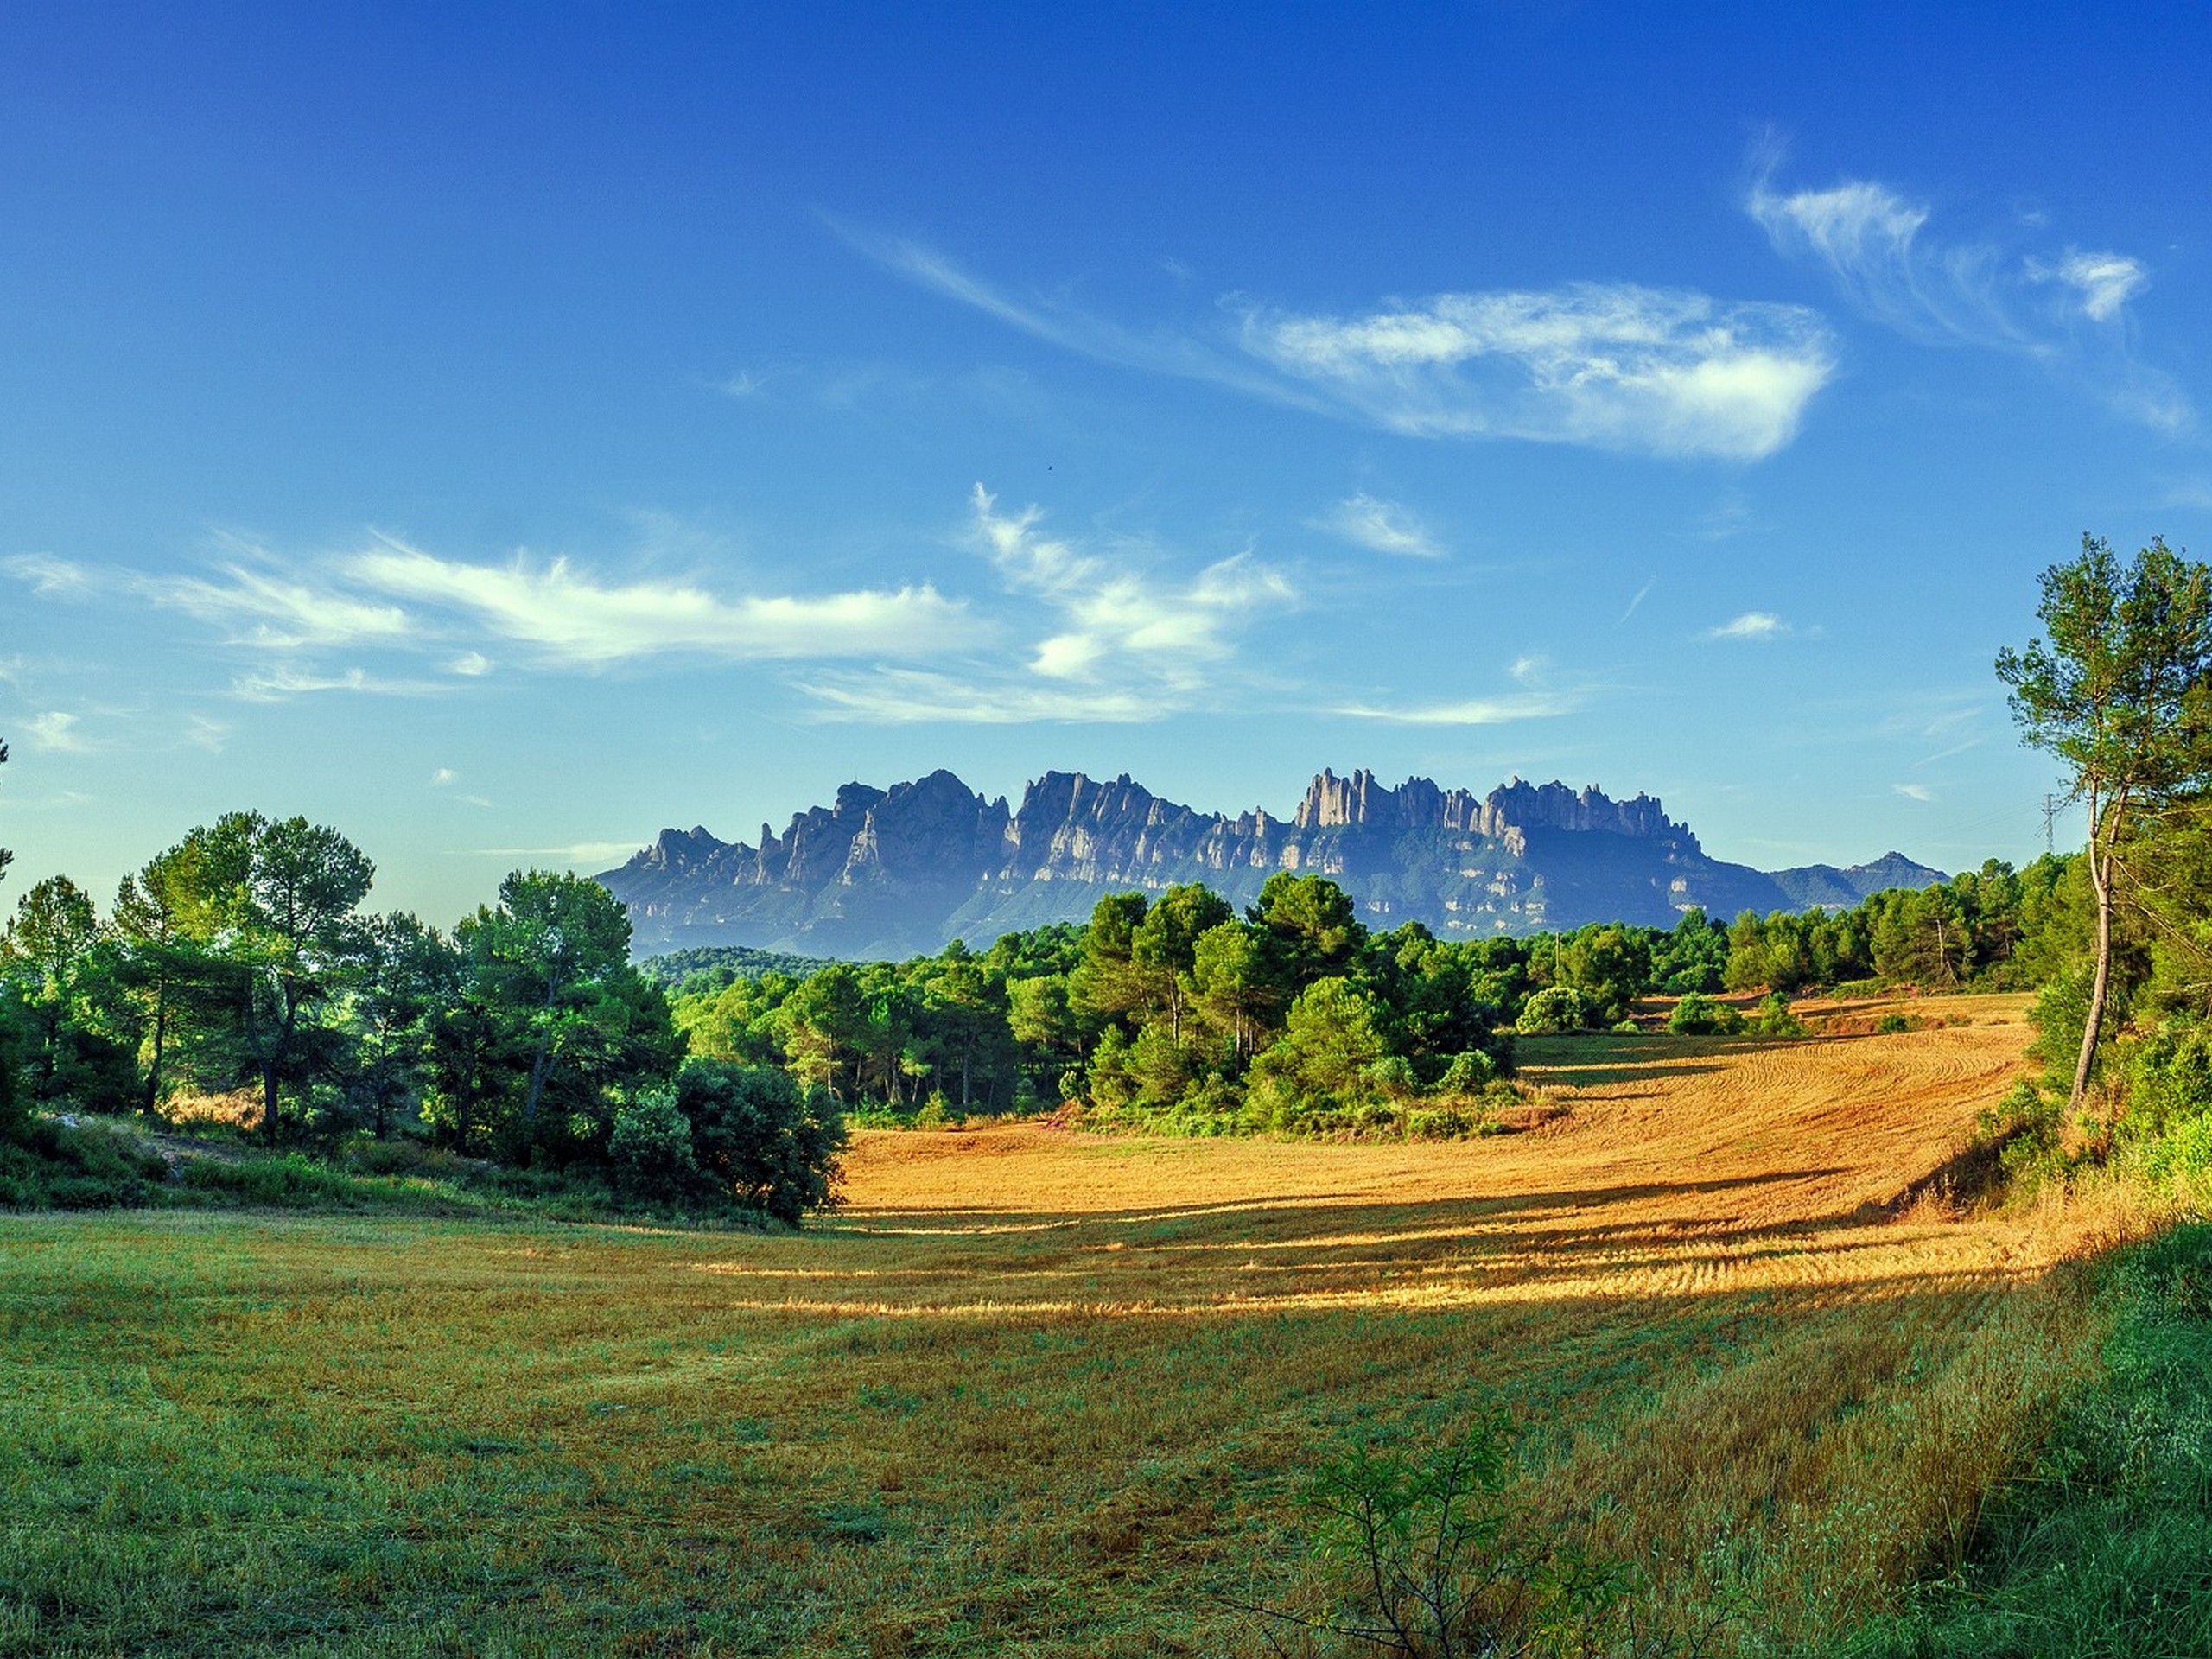 Montserrat as seen from afar